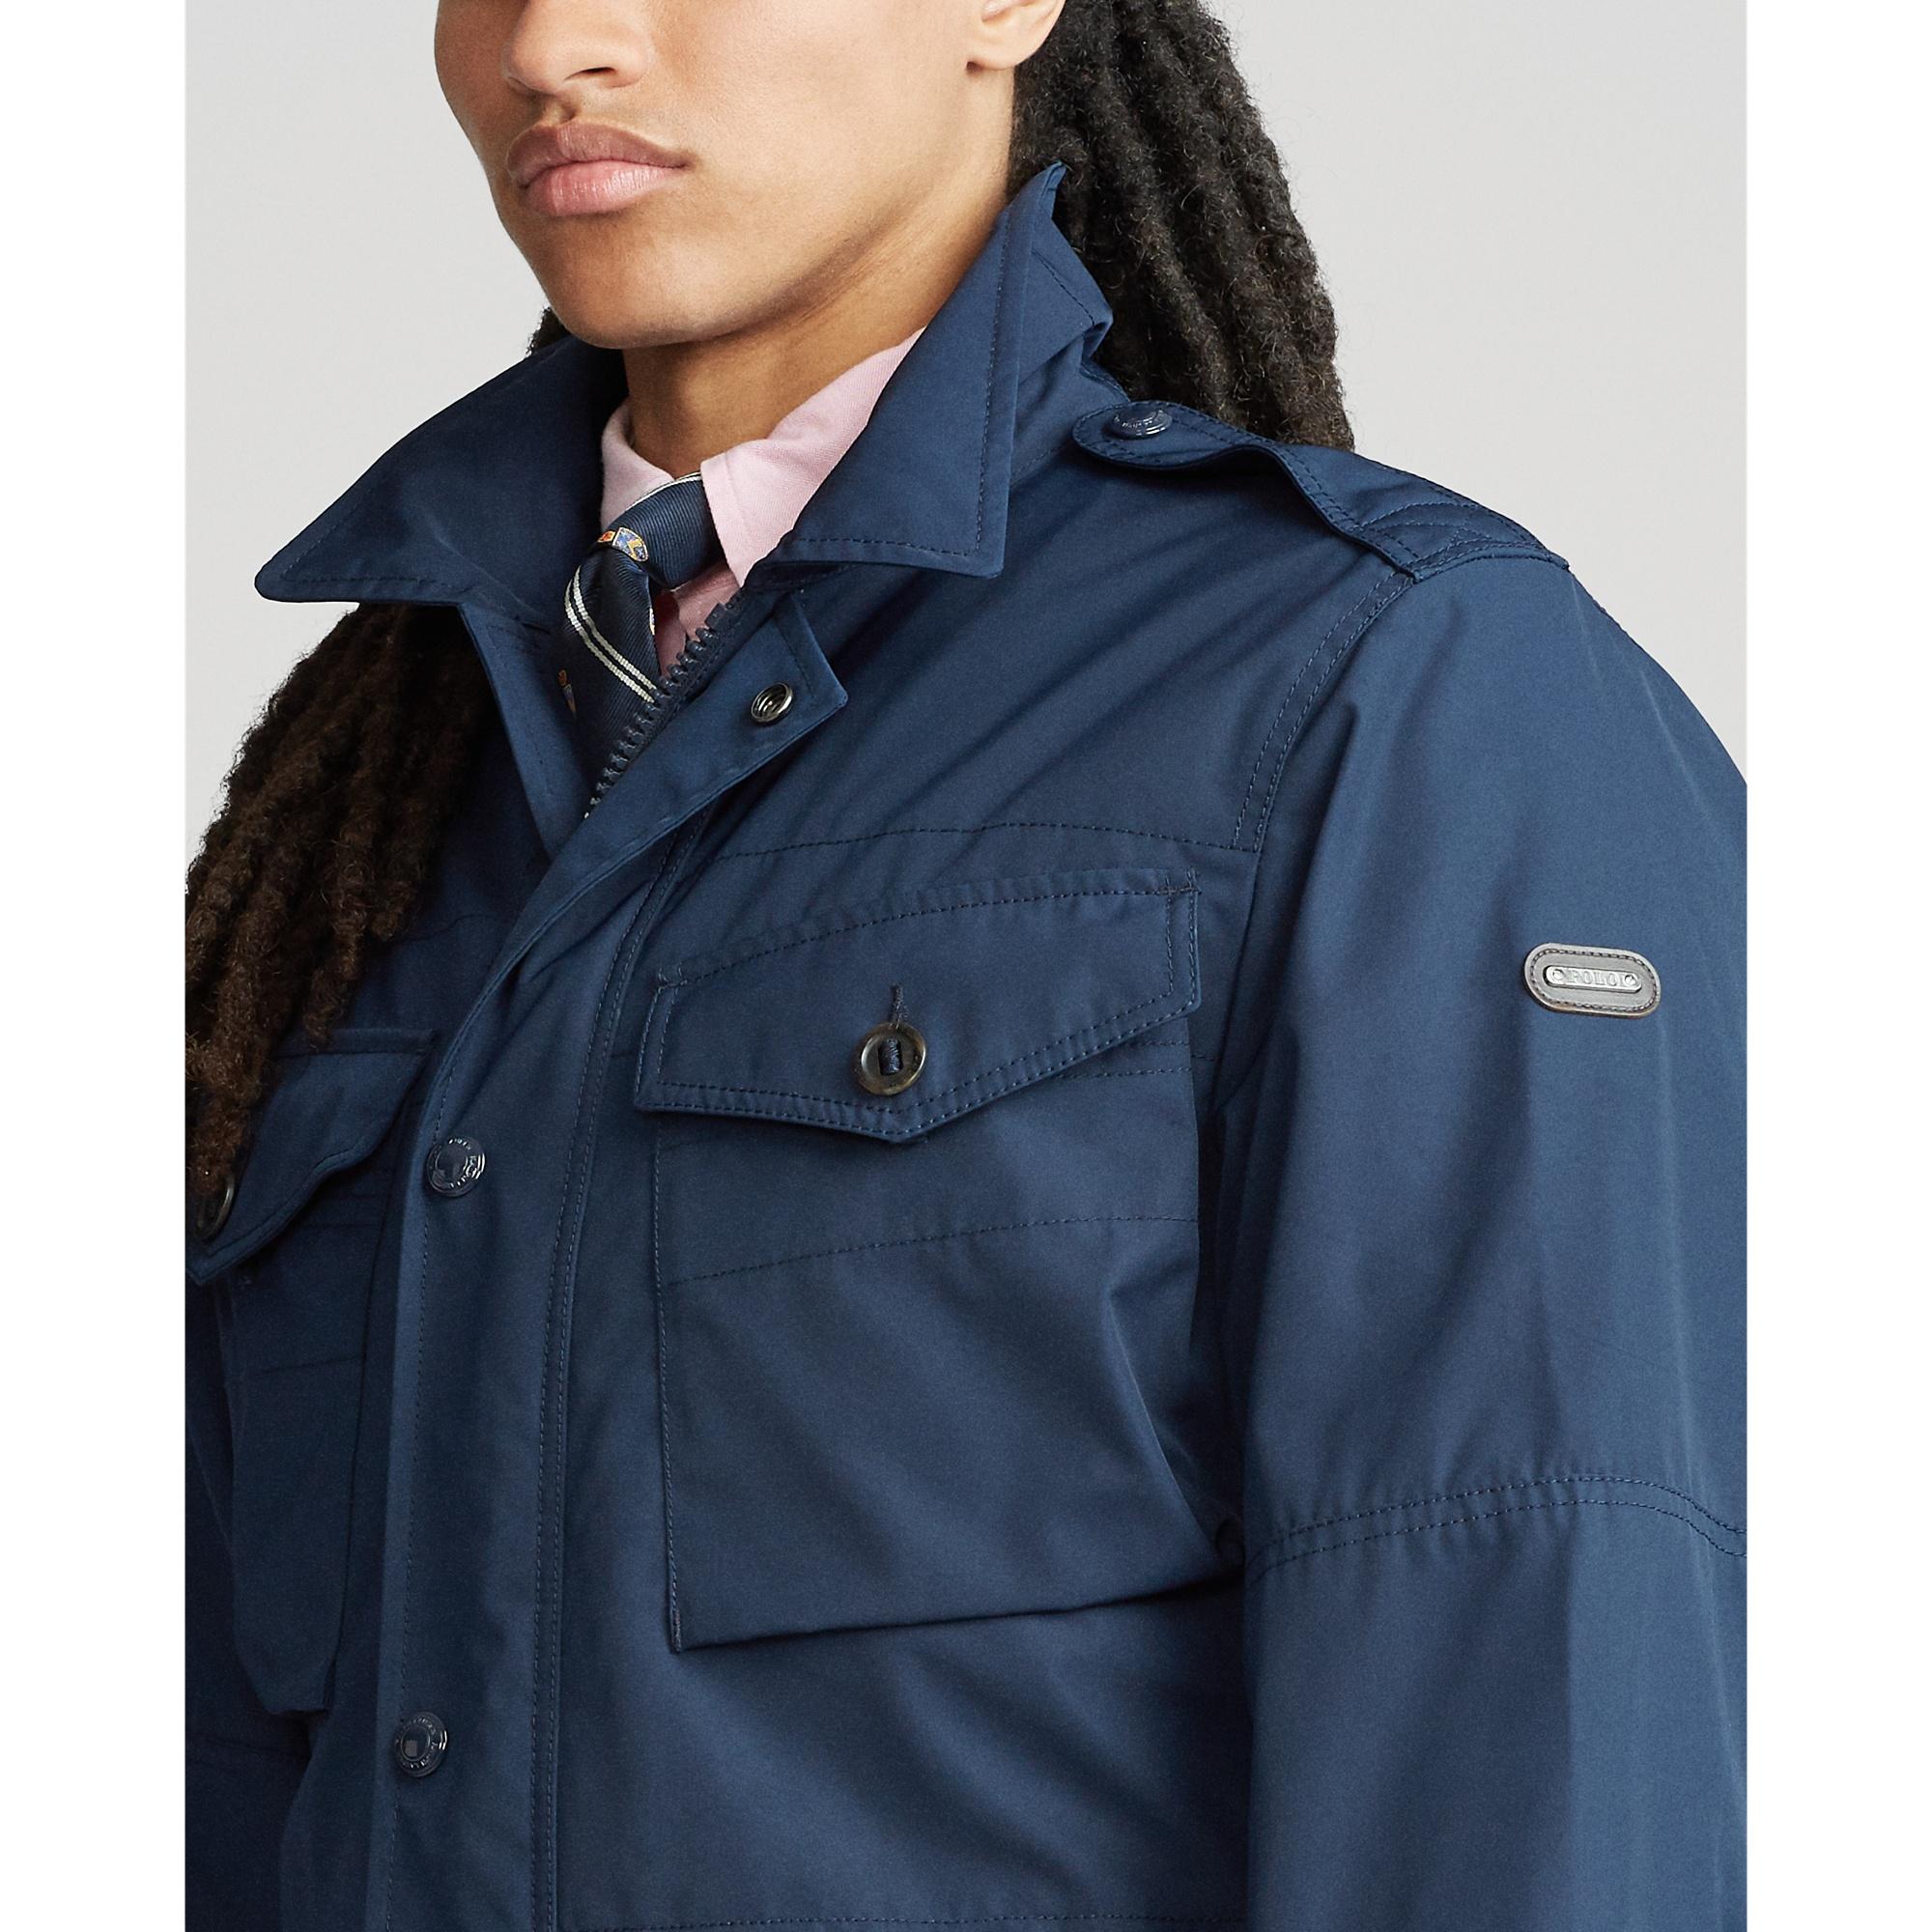 Ralph Lauren Leather Oxford Field Jacket in Blue for Men - Lyst